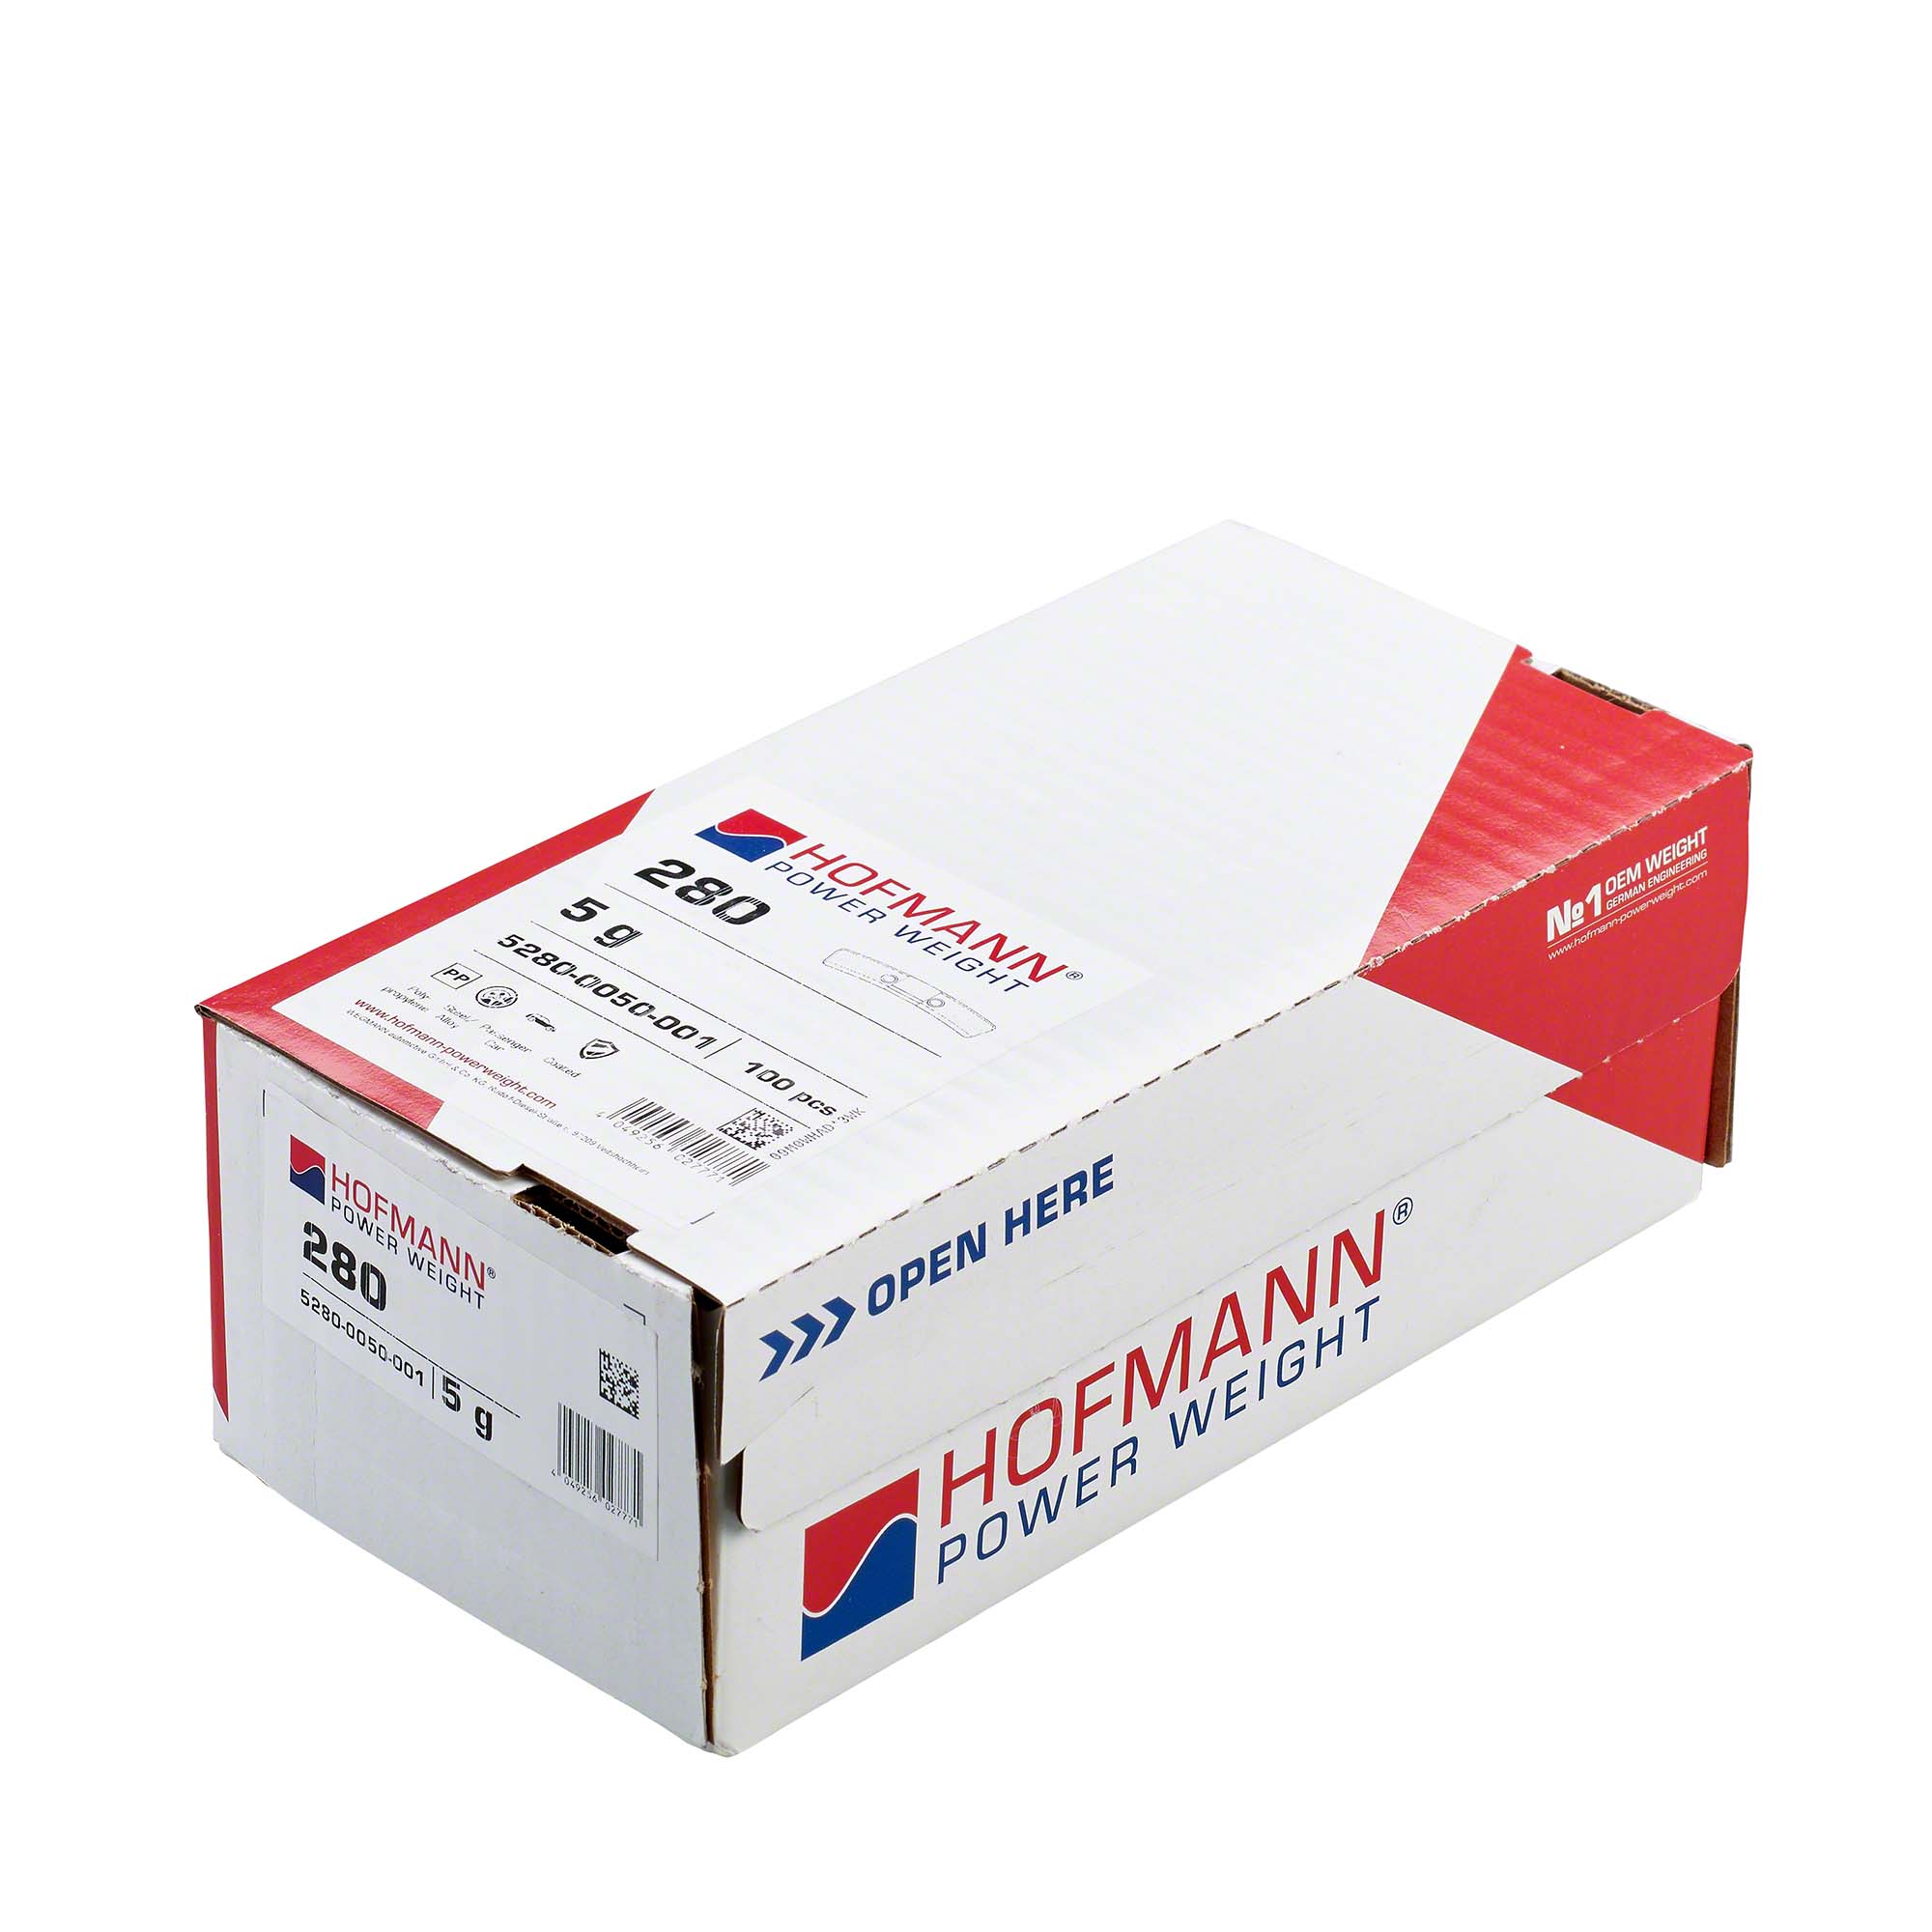 HOFMANN POWER WEIGHT-Sicherheitsgewicht - Typ 280, 5 g, Kunststoff, Silber-5280-0050-001